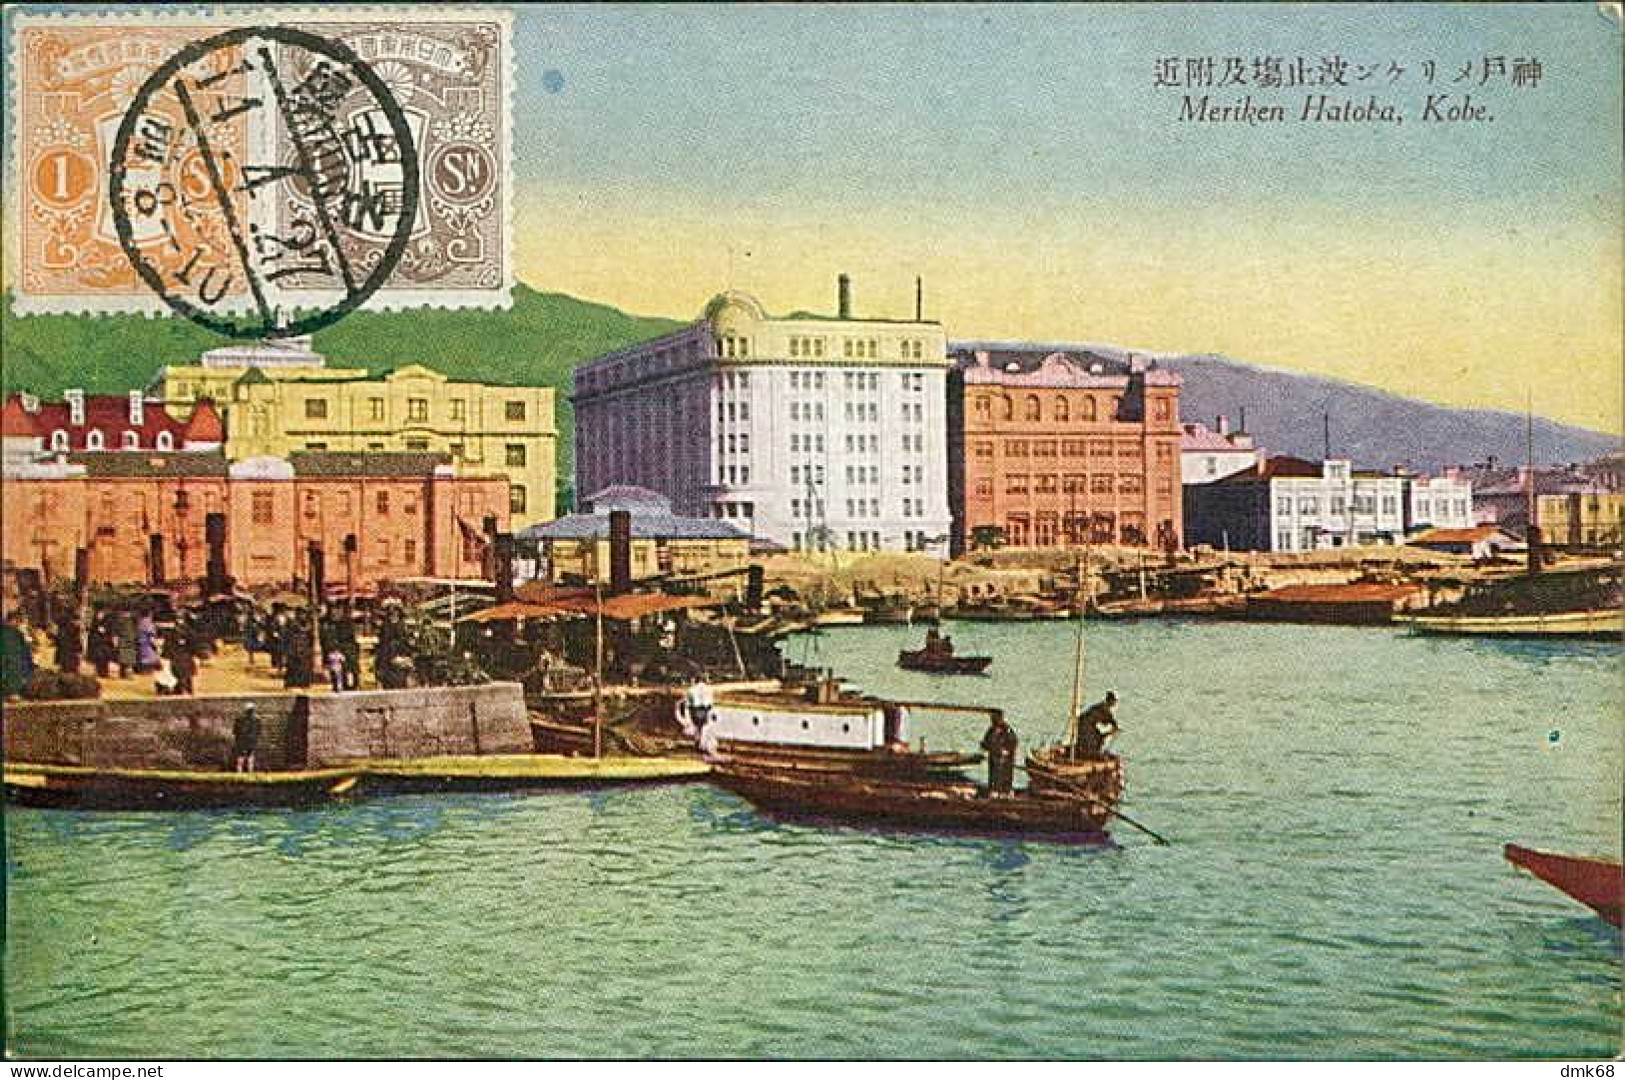 JAPAN - MERIKEN HATOBA - KOBE - EDIT SAKAEYA & CO. - 1920s / STAMPS (18065) - Kobe